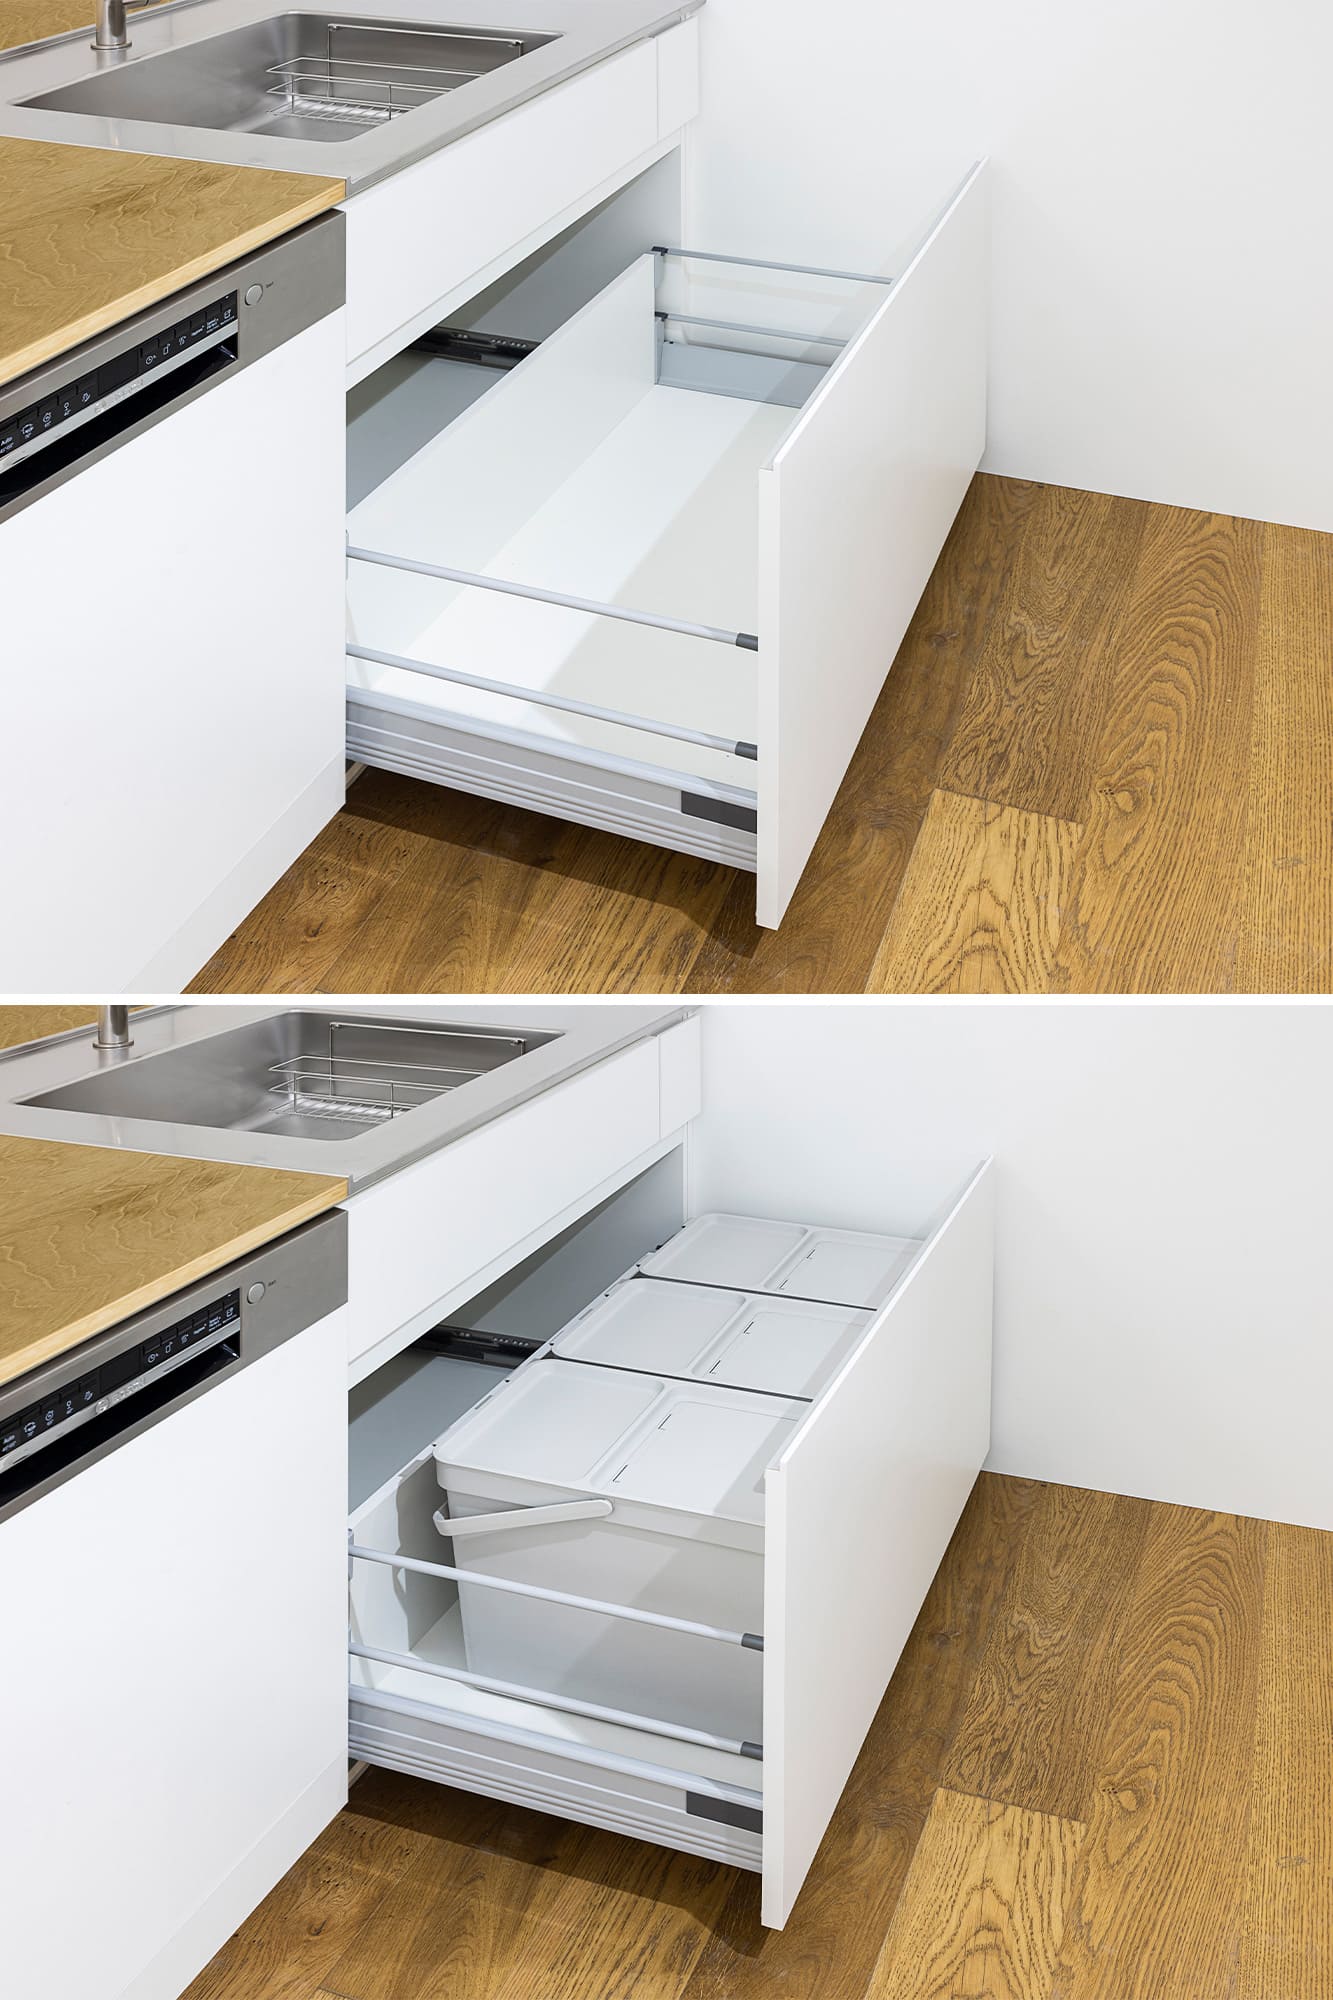 木天板キッチンⅡ型 対面シンク側 フロントオープン食洗機 W600タイプ KB-KC029-04-G183 シンク下収納（ゴミ箱はIKEAのもの）